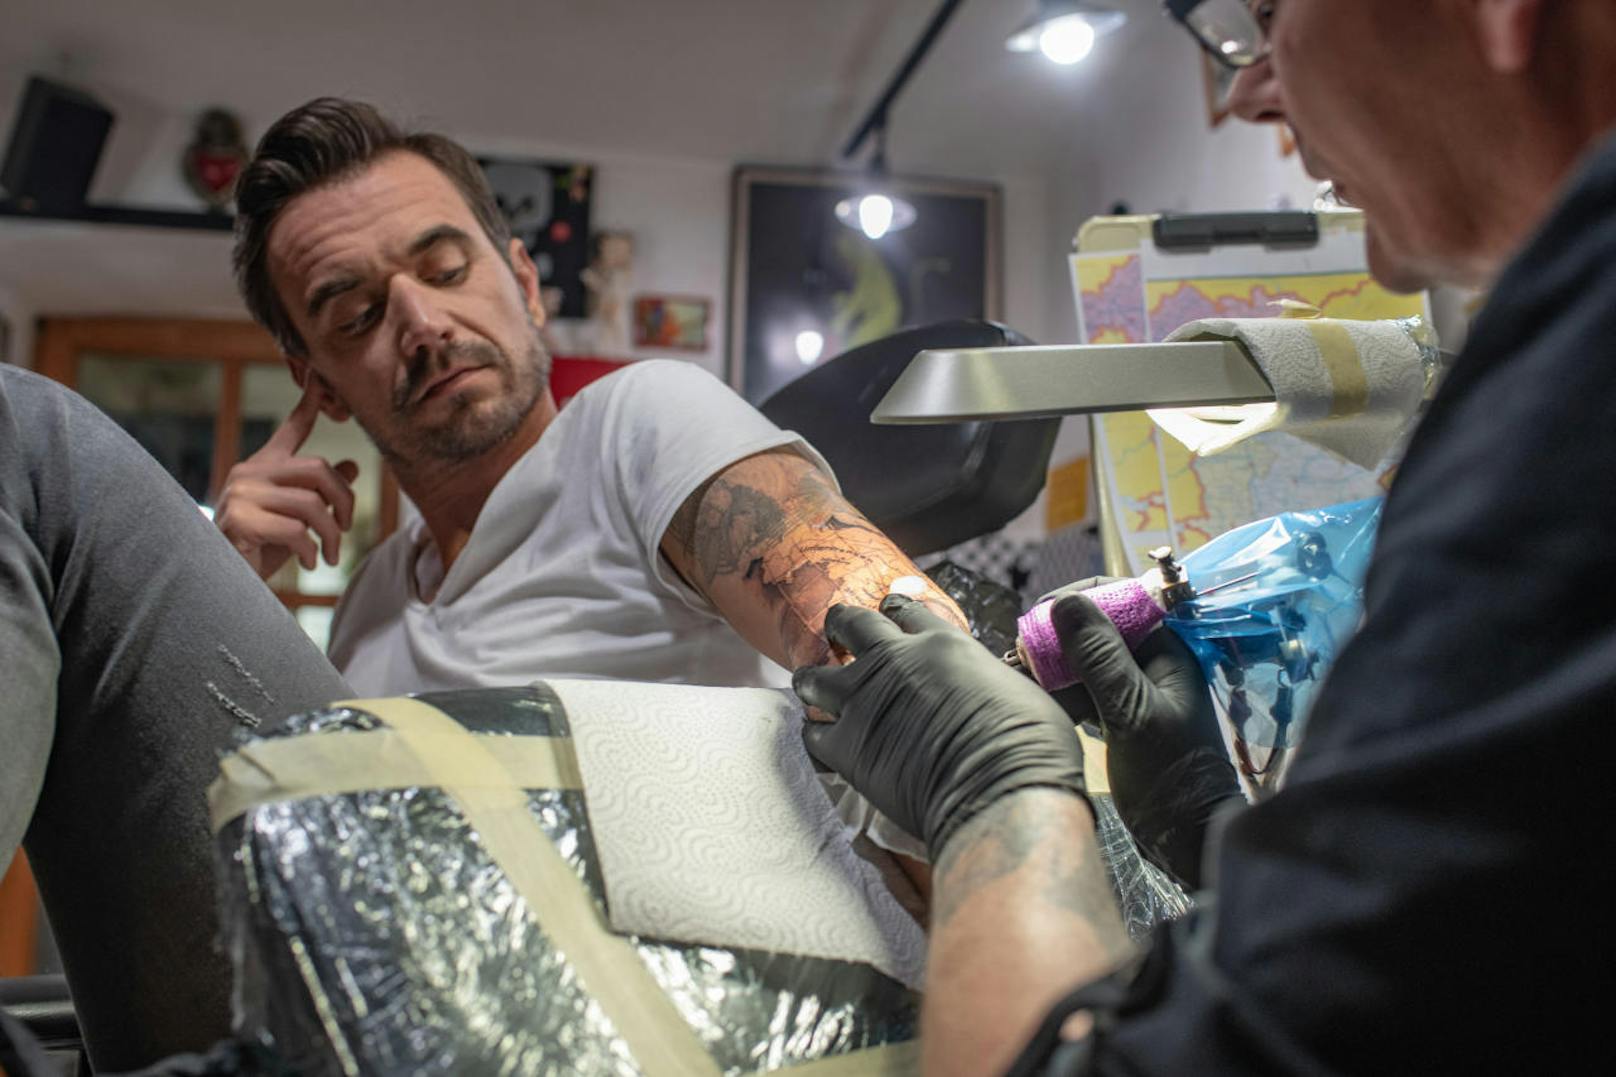 Florian Silbereisen lässt sich ein neues Tattoo stechen: Die Karte von Bayern und einen Kompass